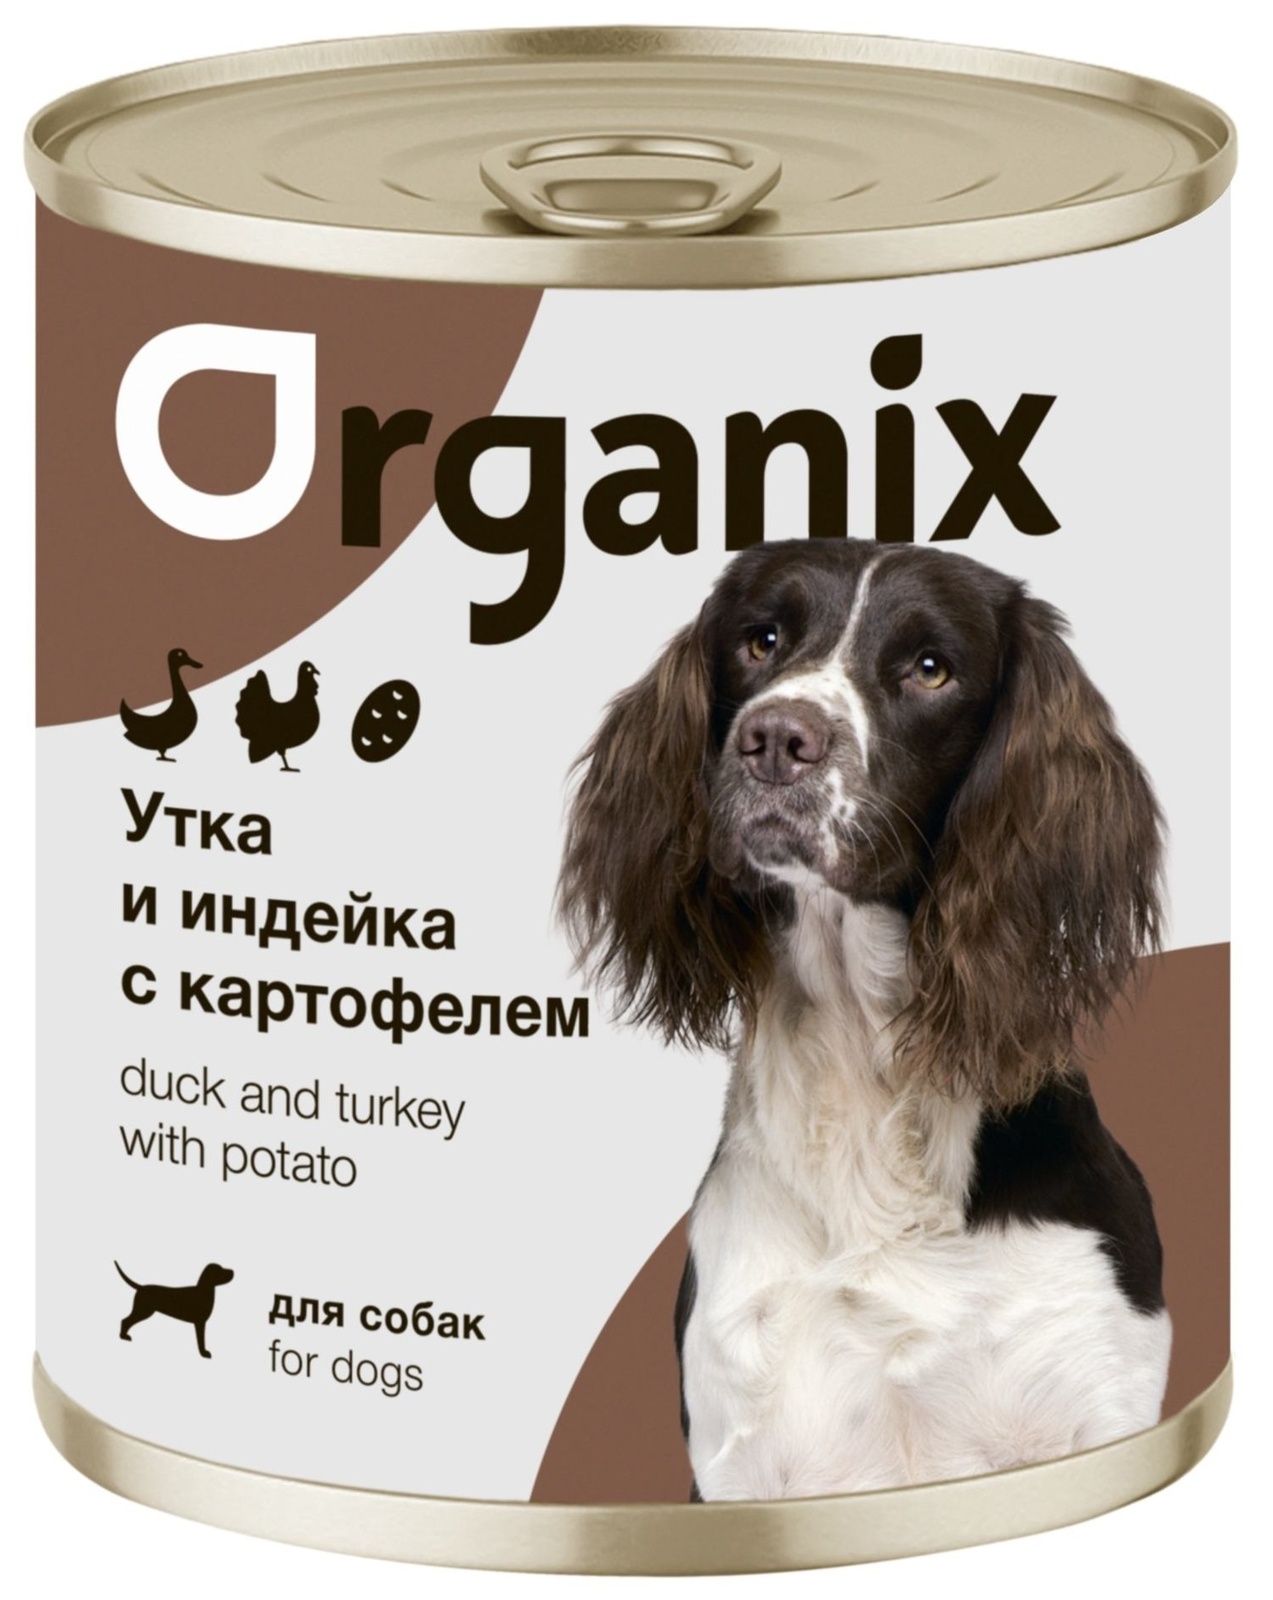 Organix консервы Organix консервы для собак Утка, индейка, картофель (400 г) organix консервы organix консервы для собак телятина с зеленой фасолью 400 г